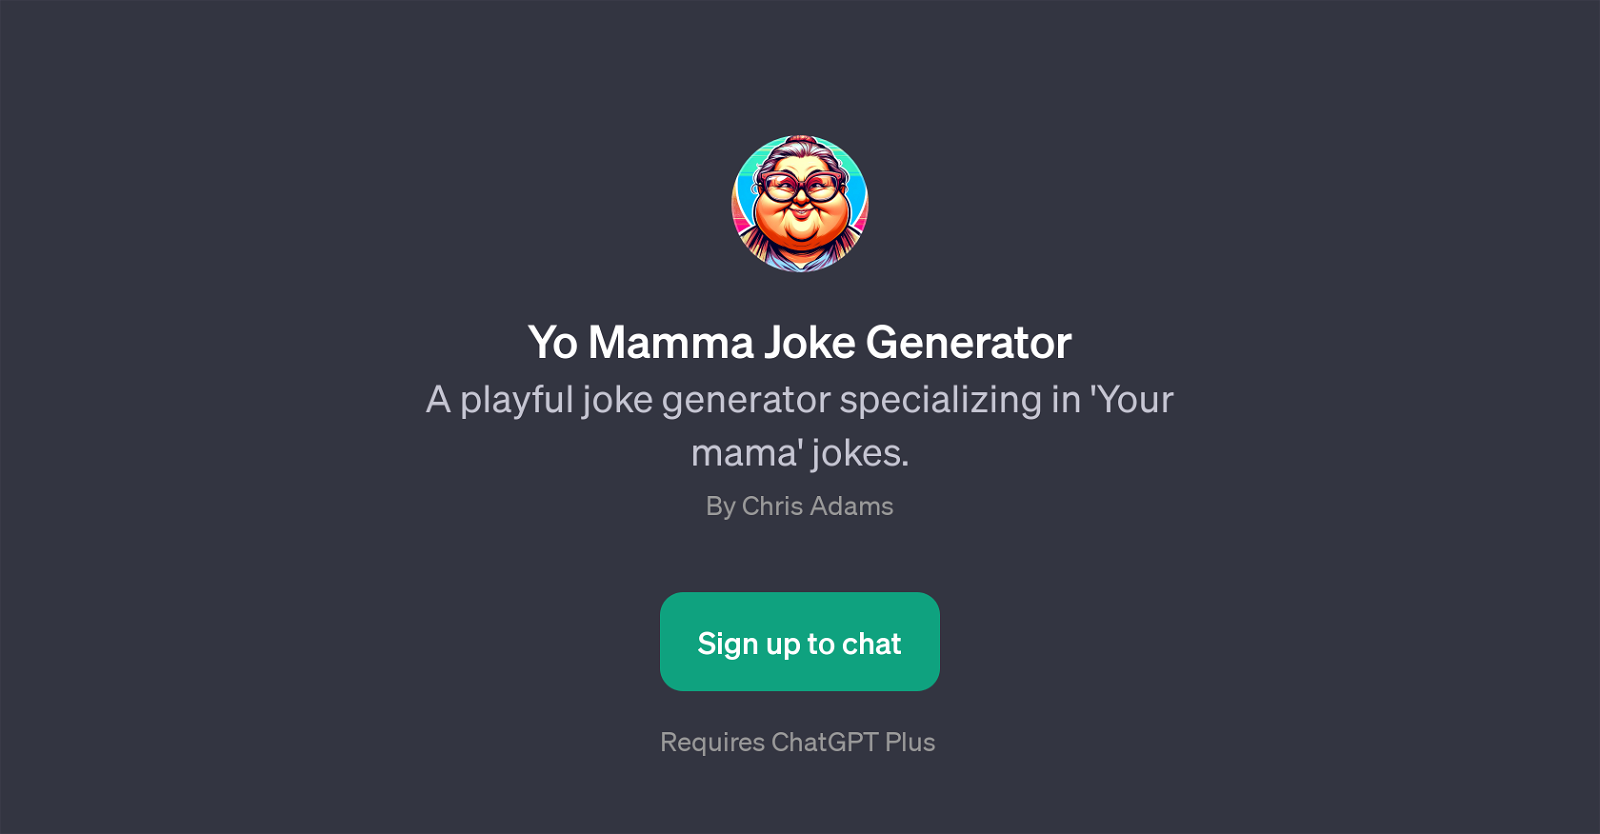 Yo Mamma Joke Generator website